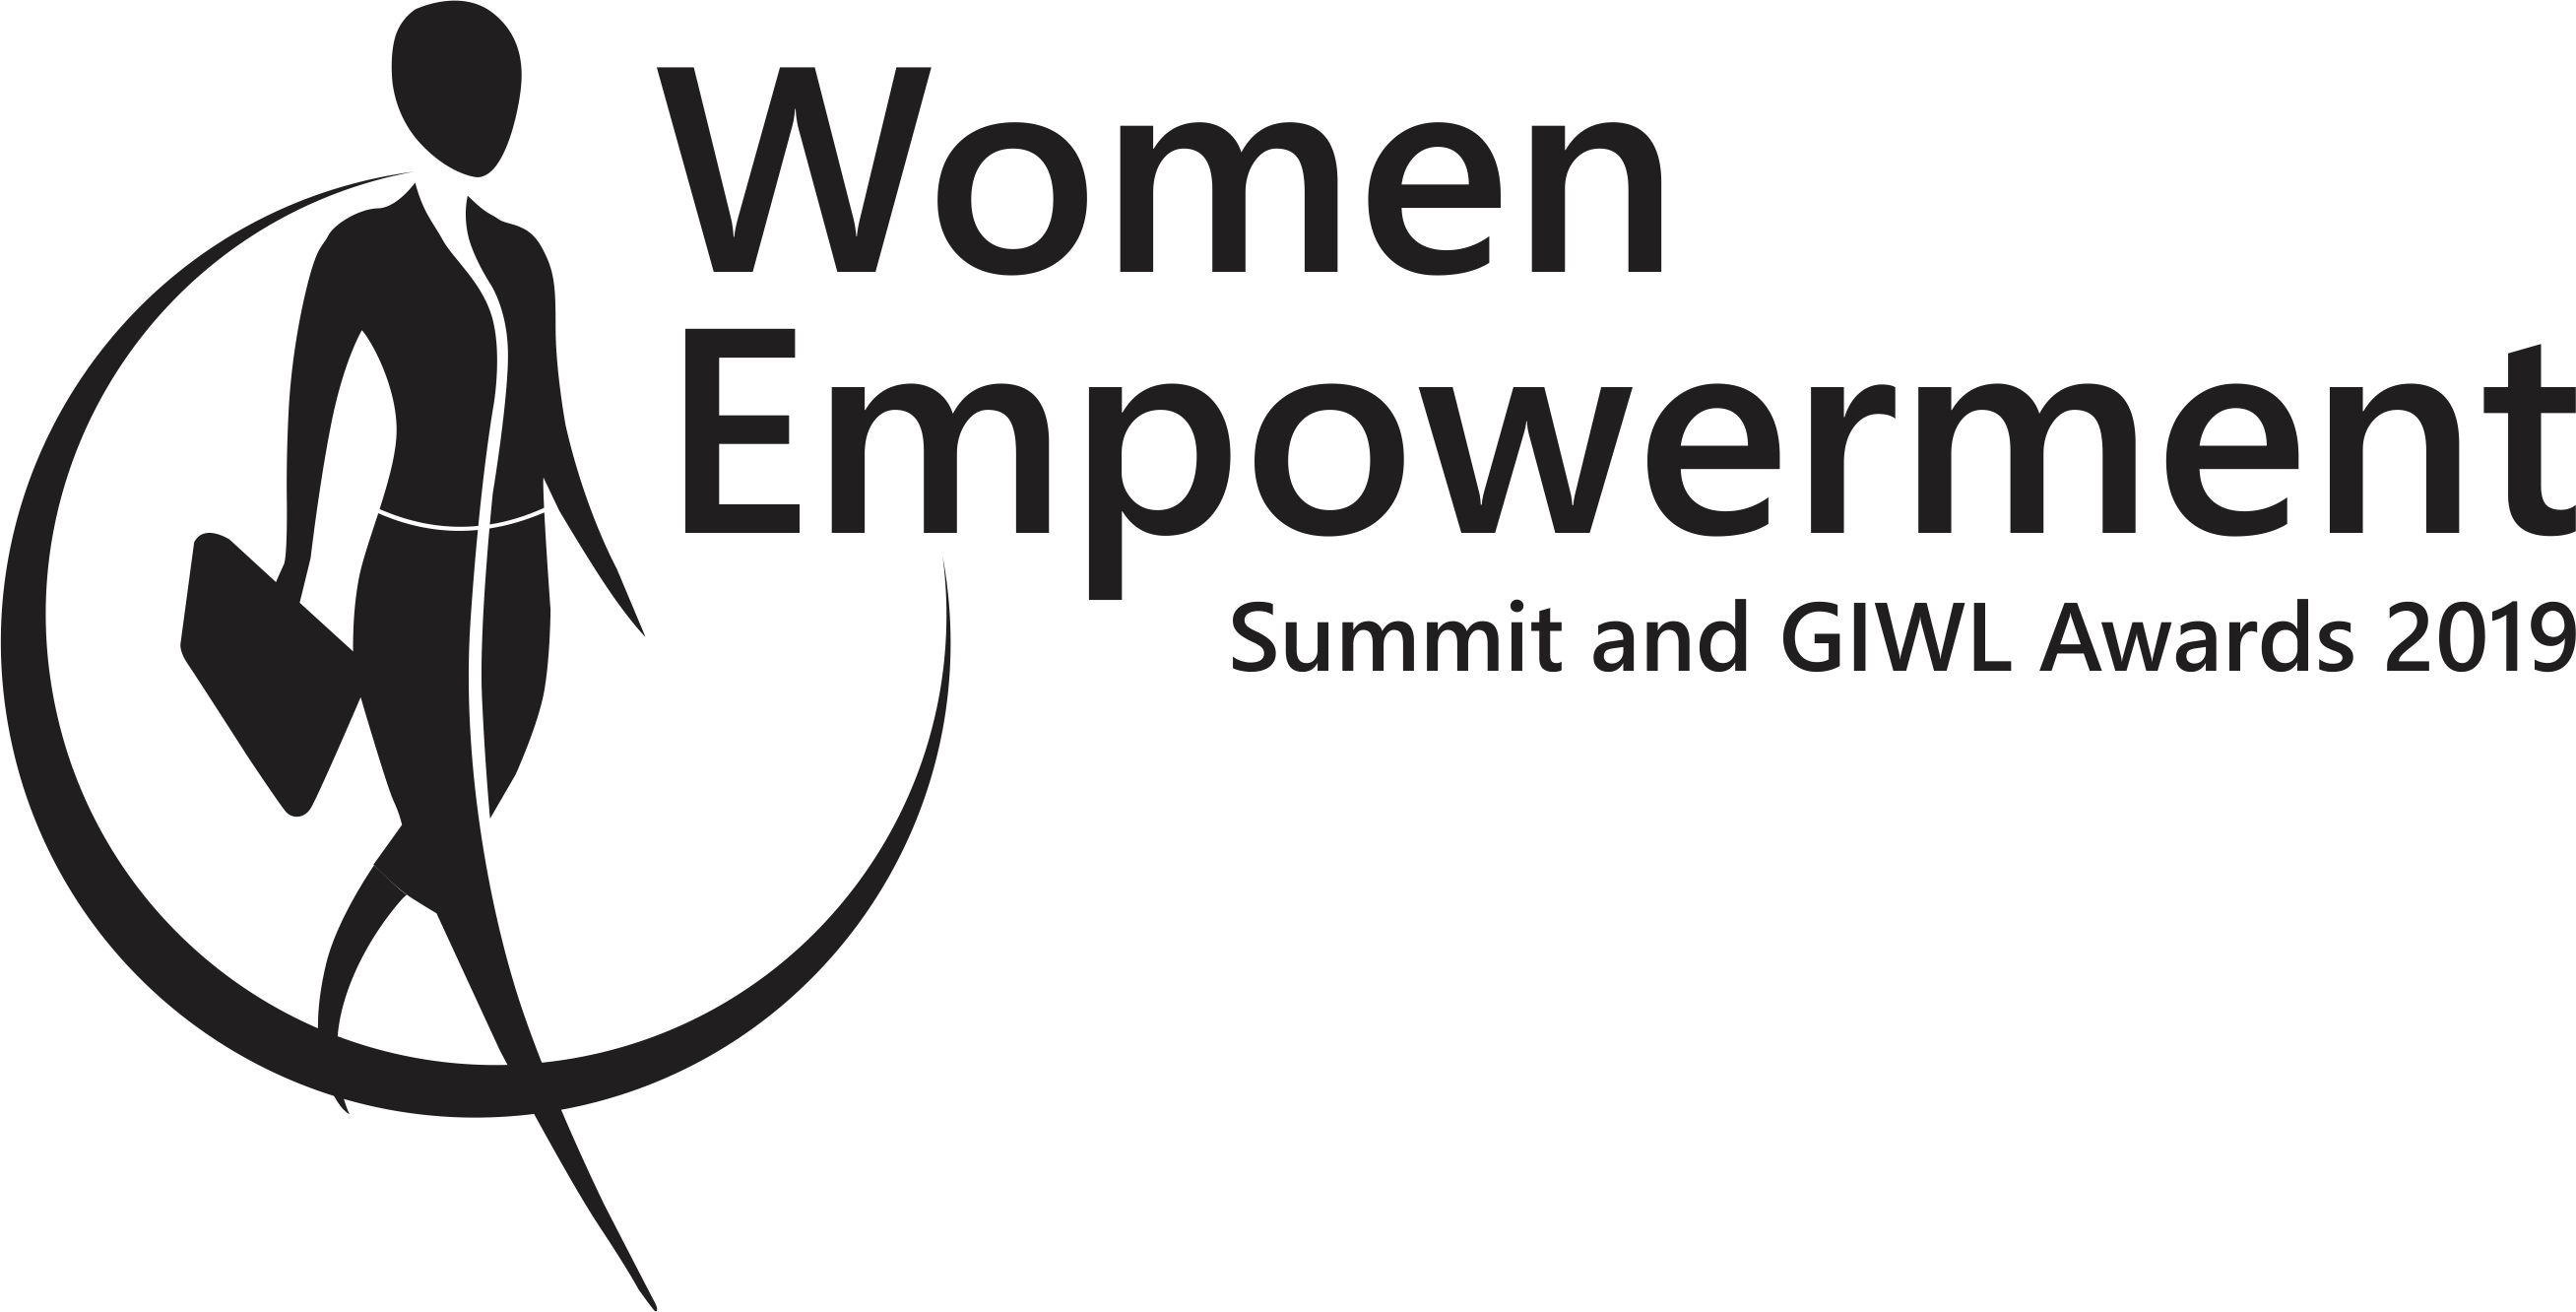 Women Empowerment Summit and GIWL Awards 2019